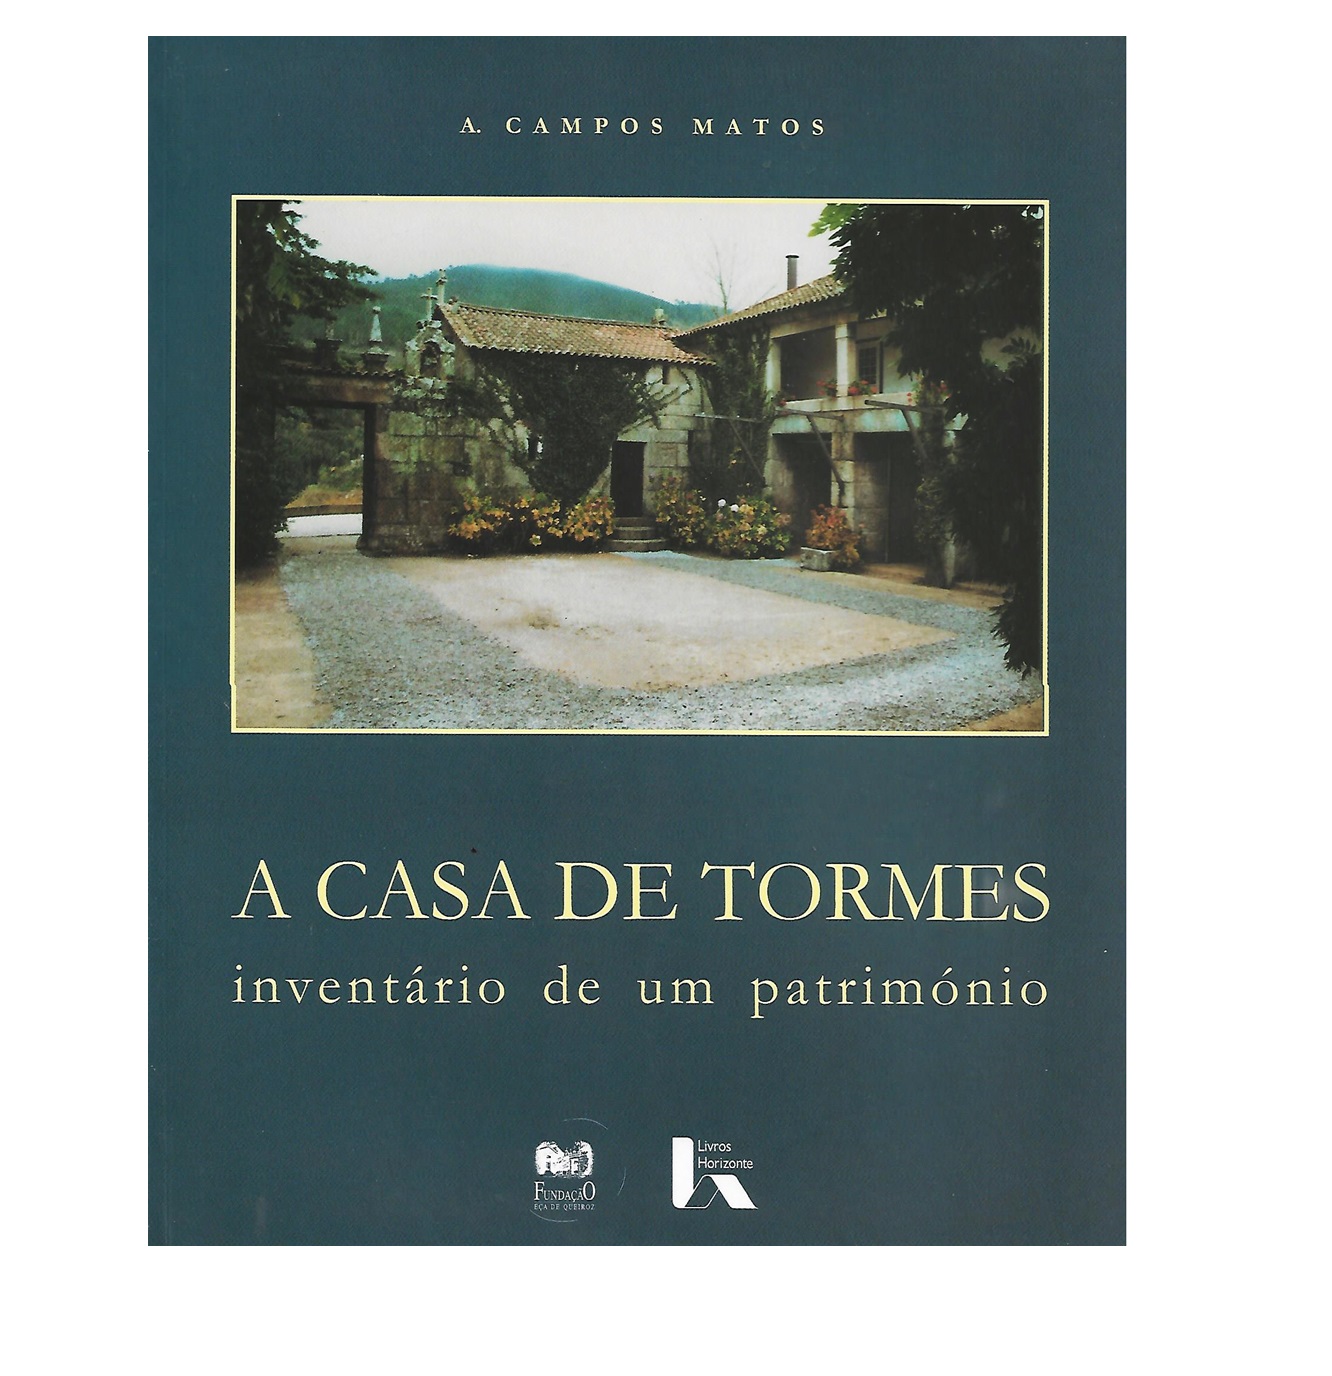 A CASA DE TORMES